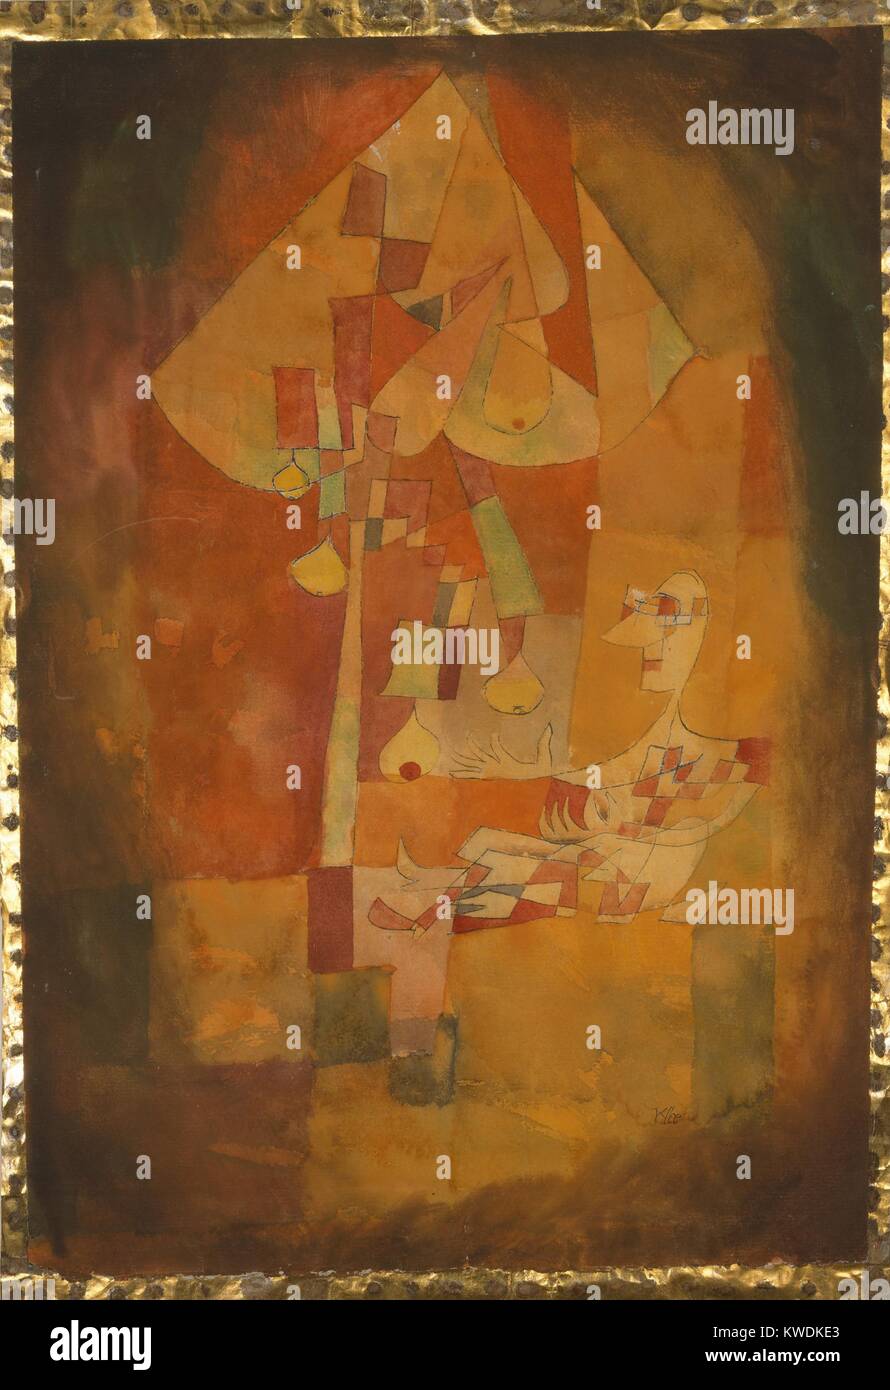 El HOMBRE BAJO LA PERAL por Paul Klee, 1921, Suiza de acuarela. Pintado en tonos de naranja, grandes y pequeñas formas de color crean la imagen cubista (BSLOC 2017 7 35) Foto de stock